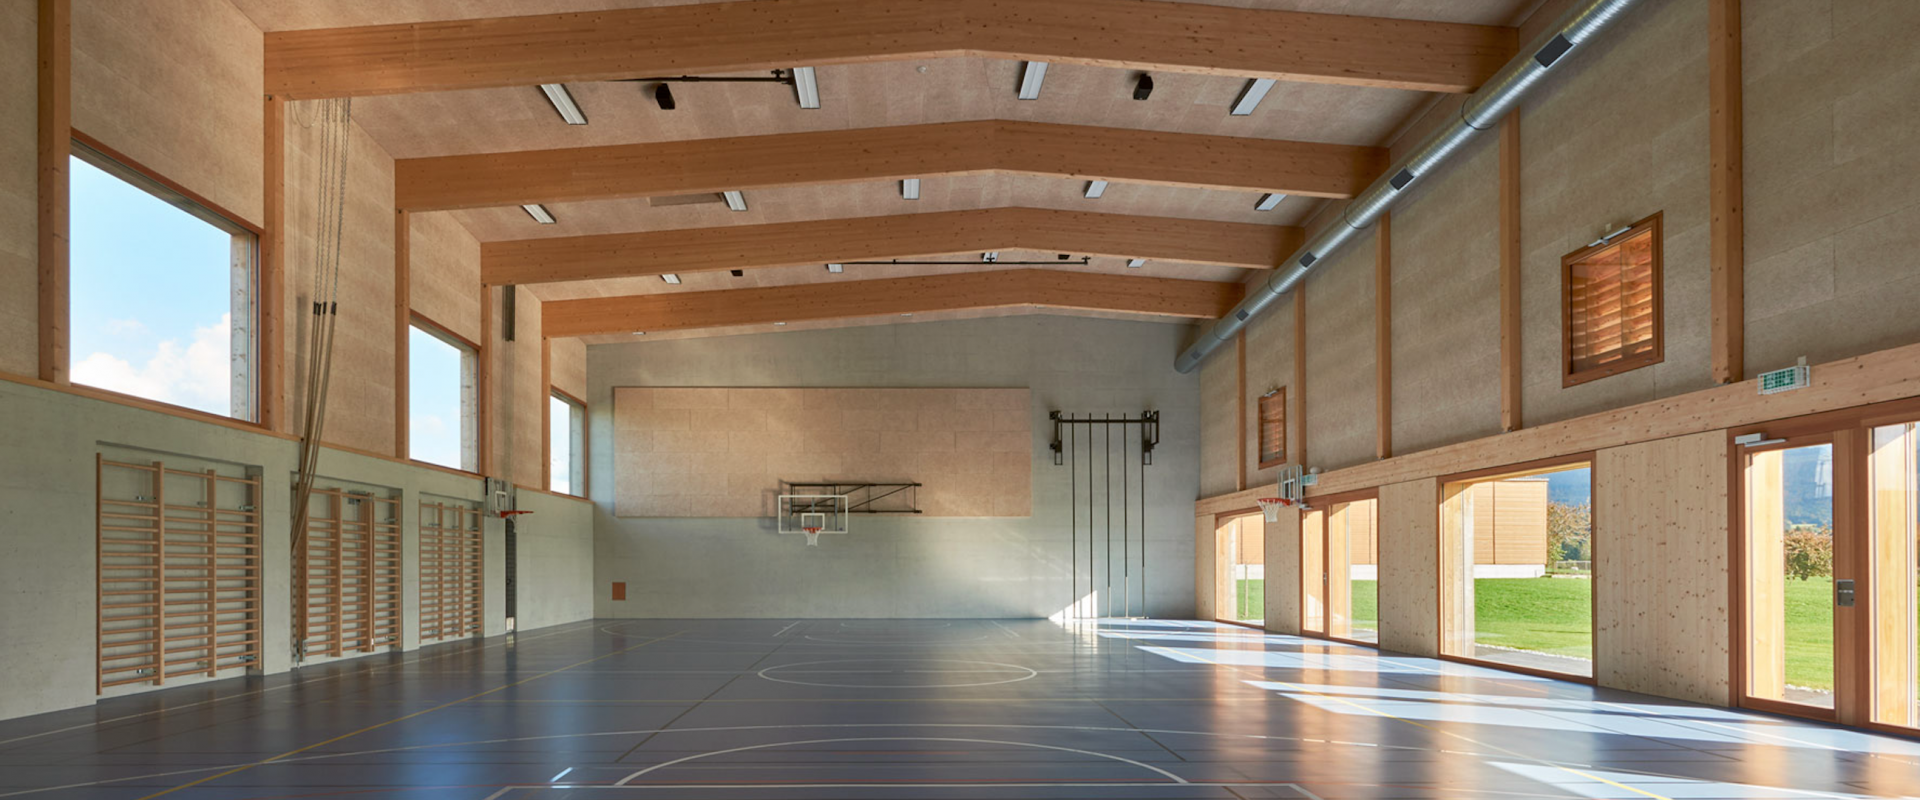 salle de gym de la région de fribourg réalisée en bois